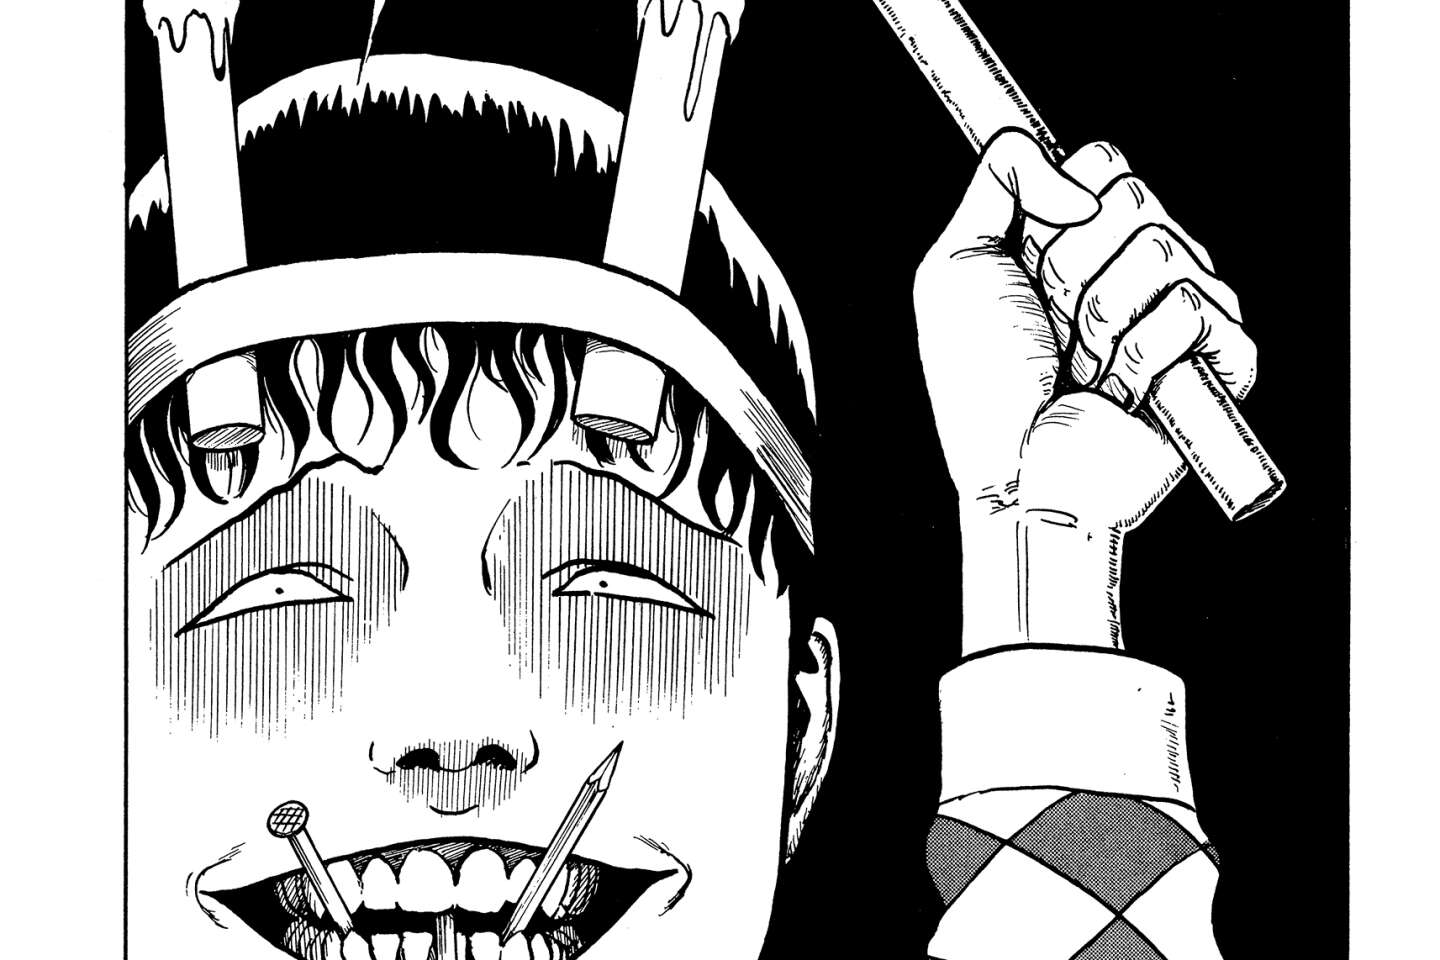 The Twisted World of Manga Artist Junji Ito